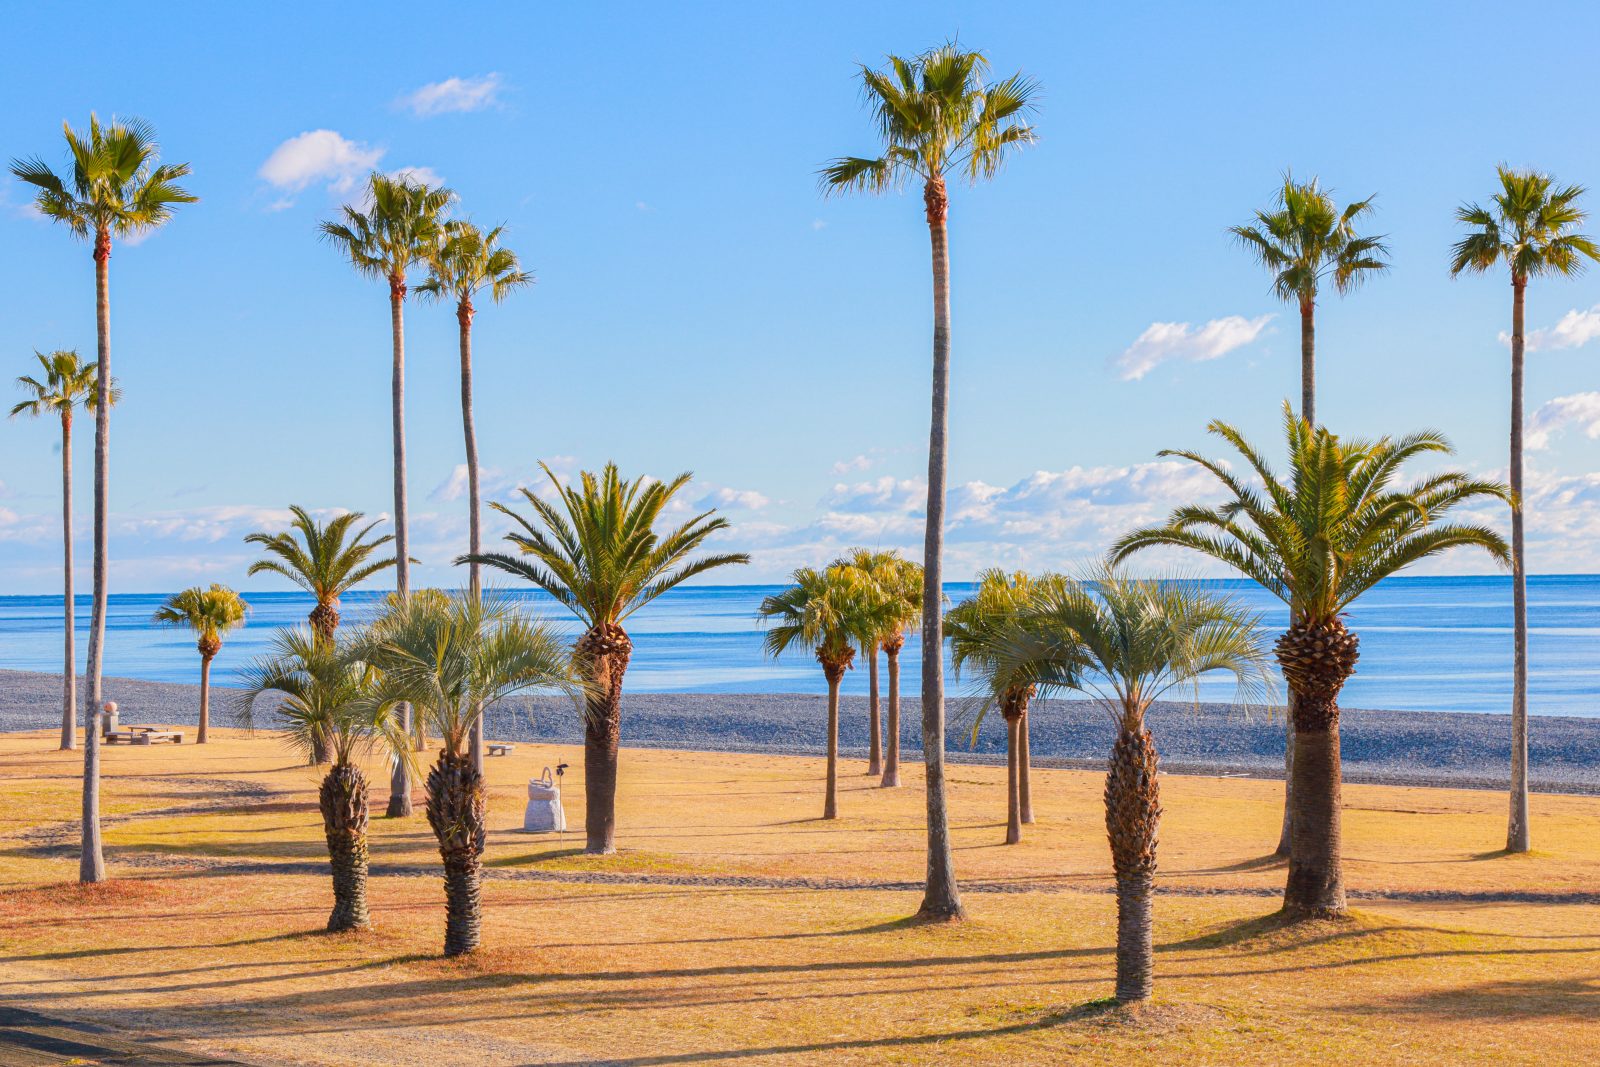 七里御浜ふれあいビーチの写真「ヤシの木が広がる公園」